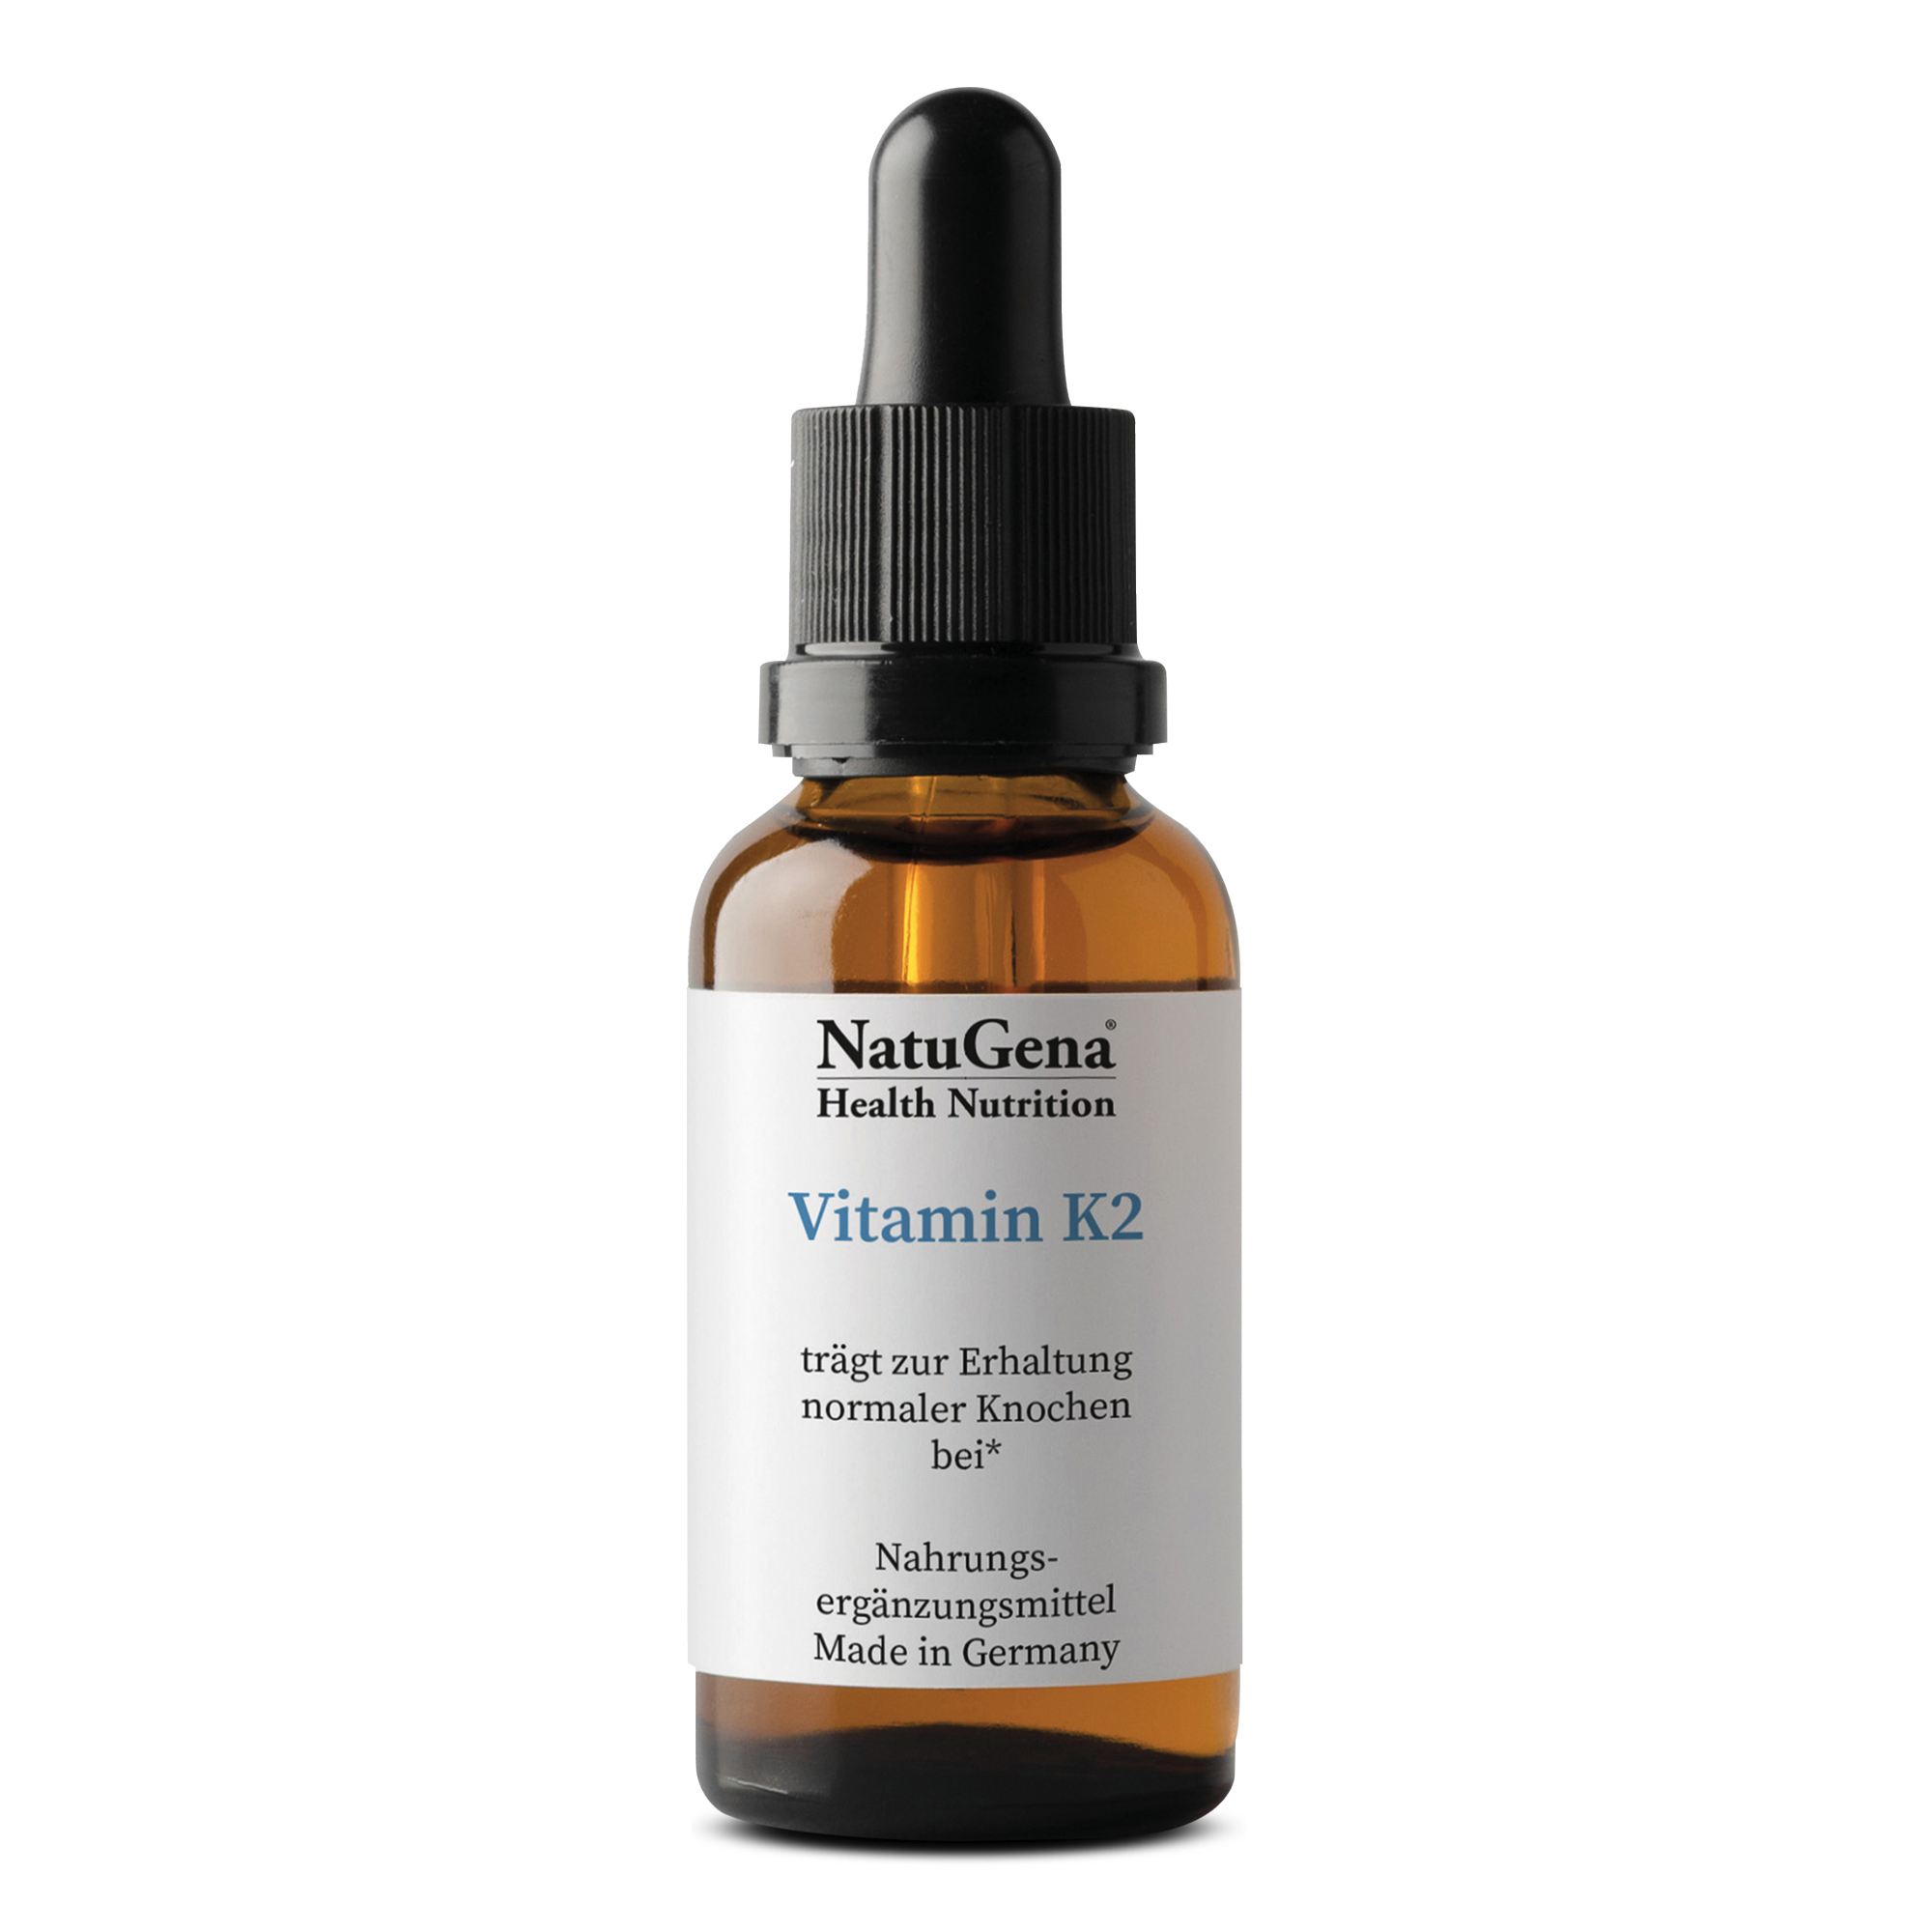 NatuGena Vitamin K2 | 20 ml | Natürliches Vitamin K aus Natto für gesunde Knochen